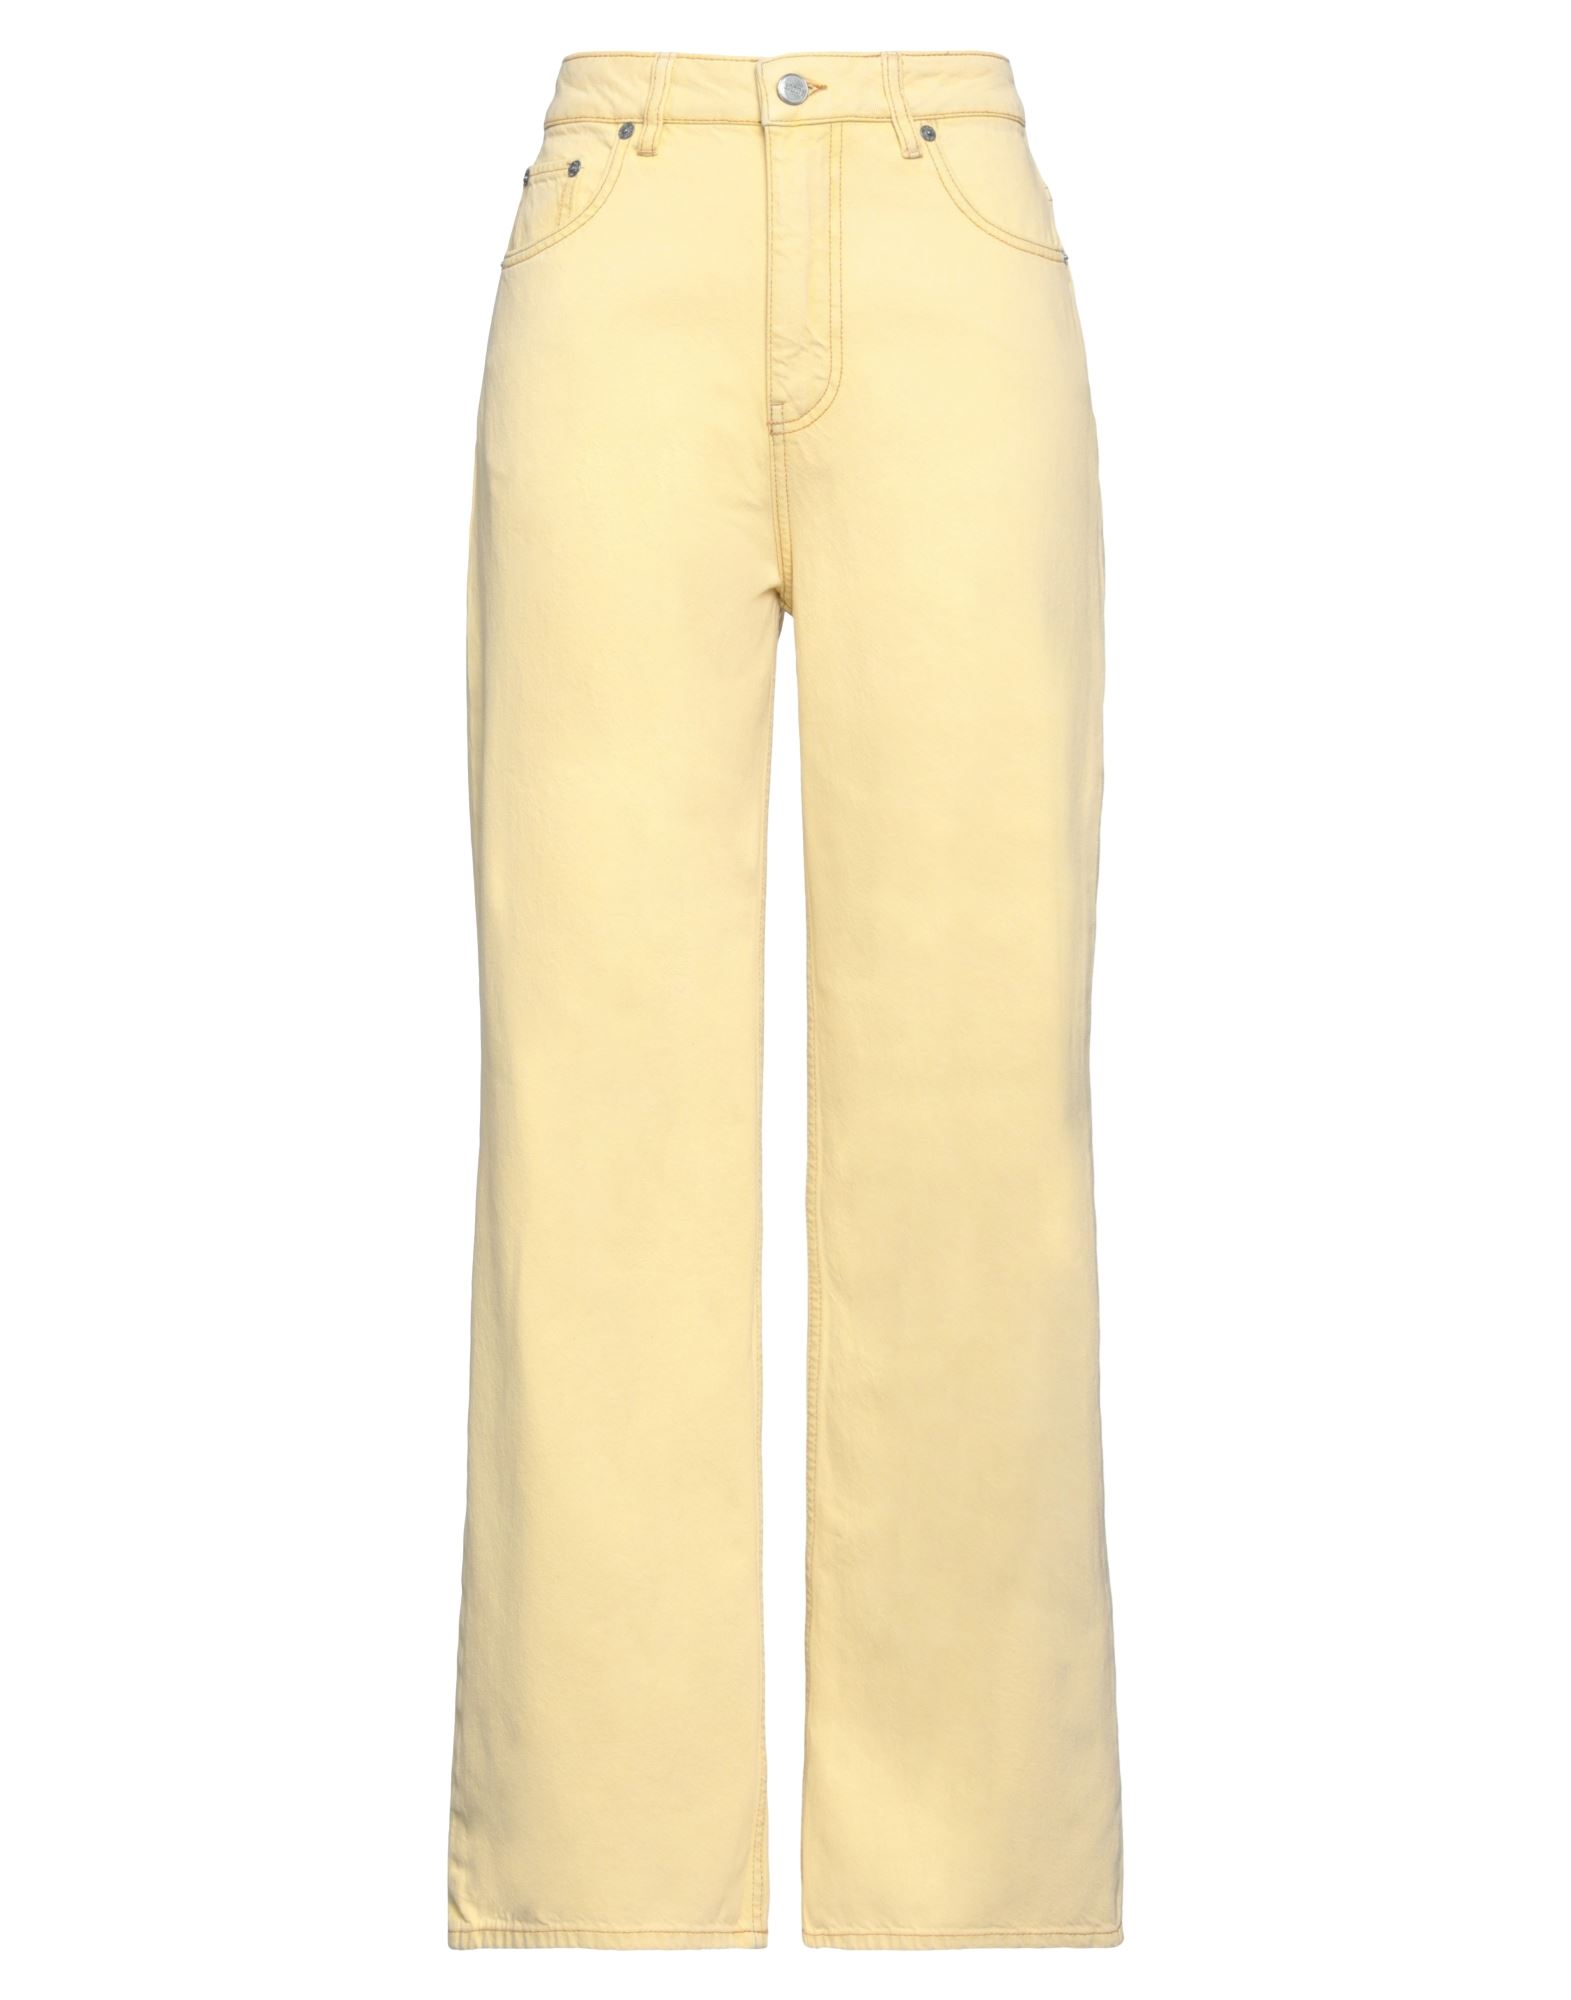 Shop Ganni Woman Jeans Yellow Size 28 Organic Cotton